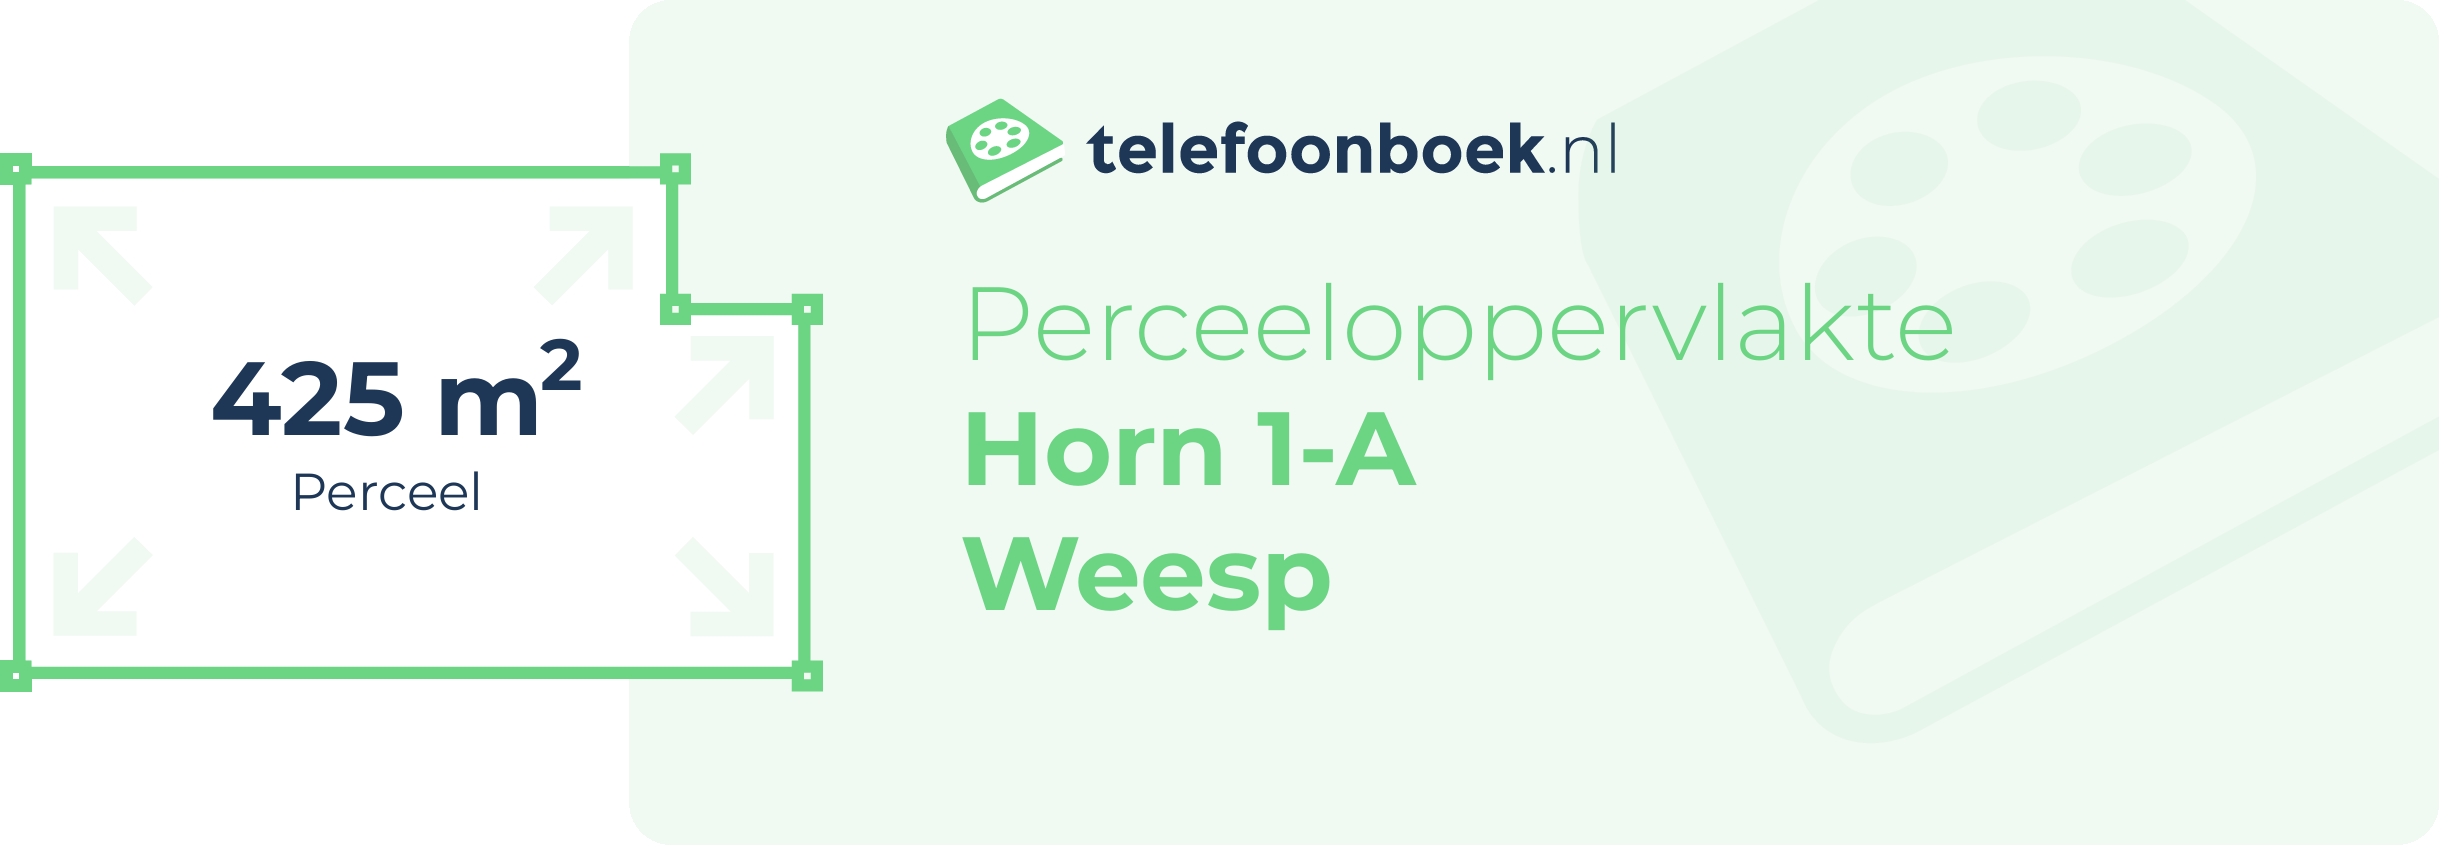 Perceeloppervlakte Horn 1-A Weesp